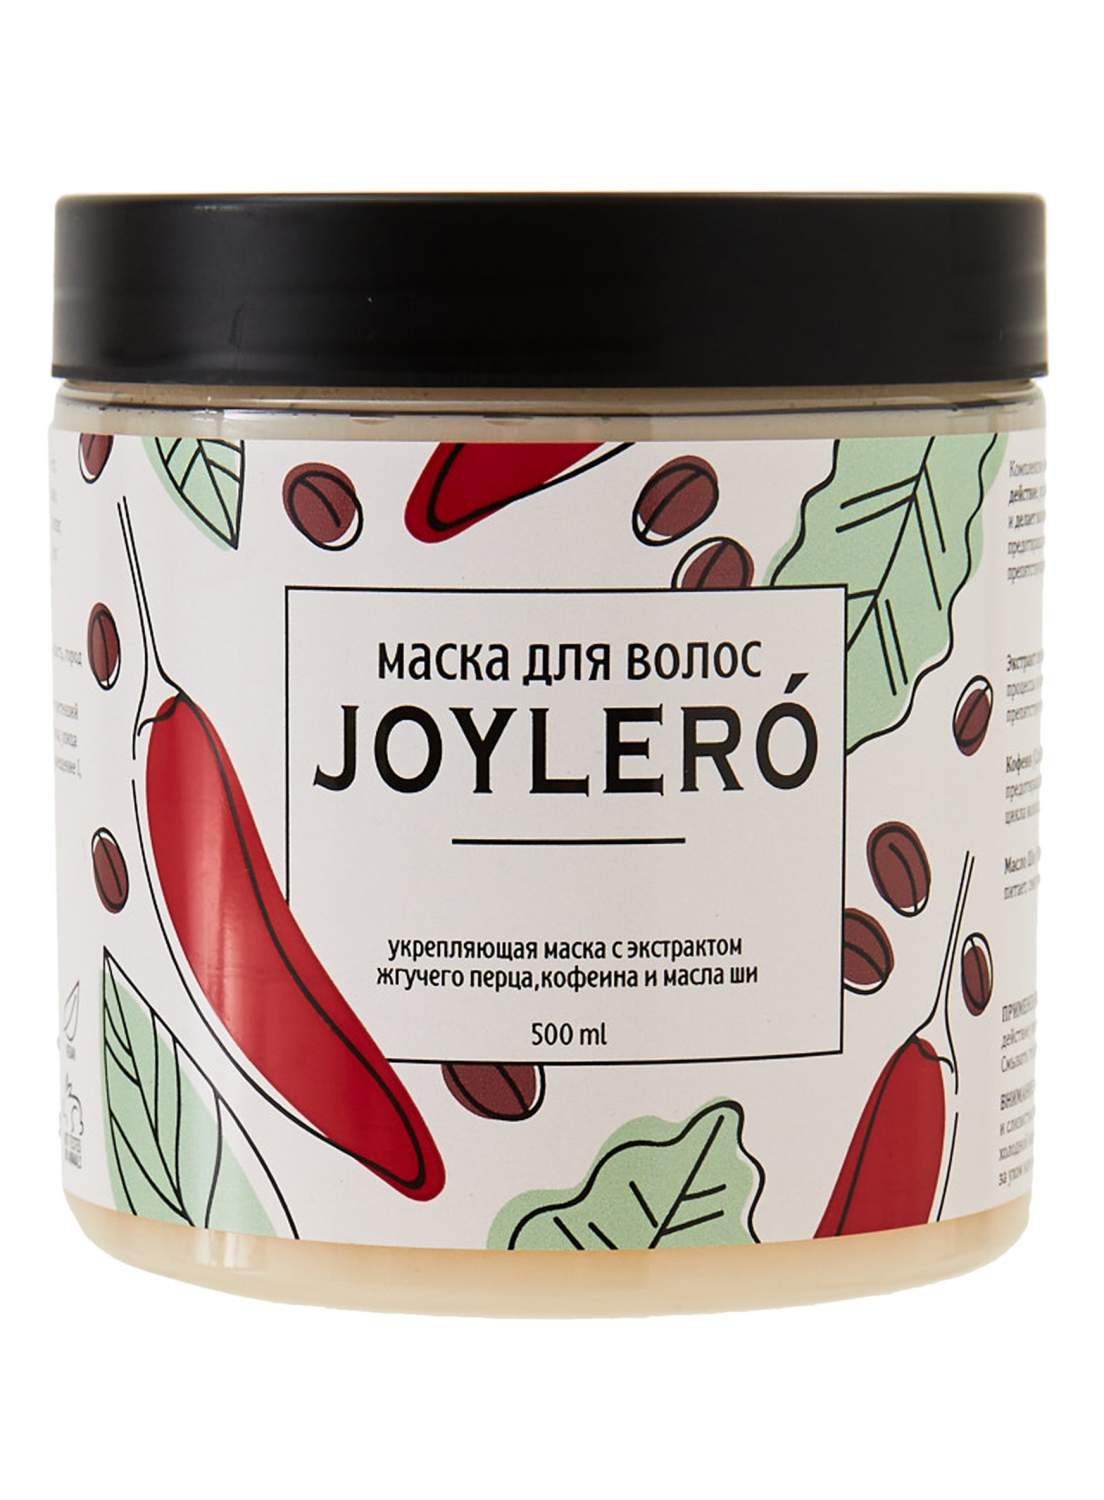 Маски для волос JOYLERO - купить маски для волос JOYLERO, цены в Москве на Мегамаркет